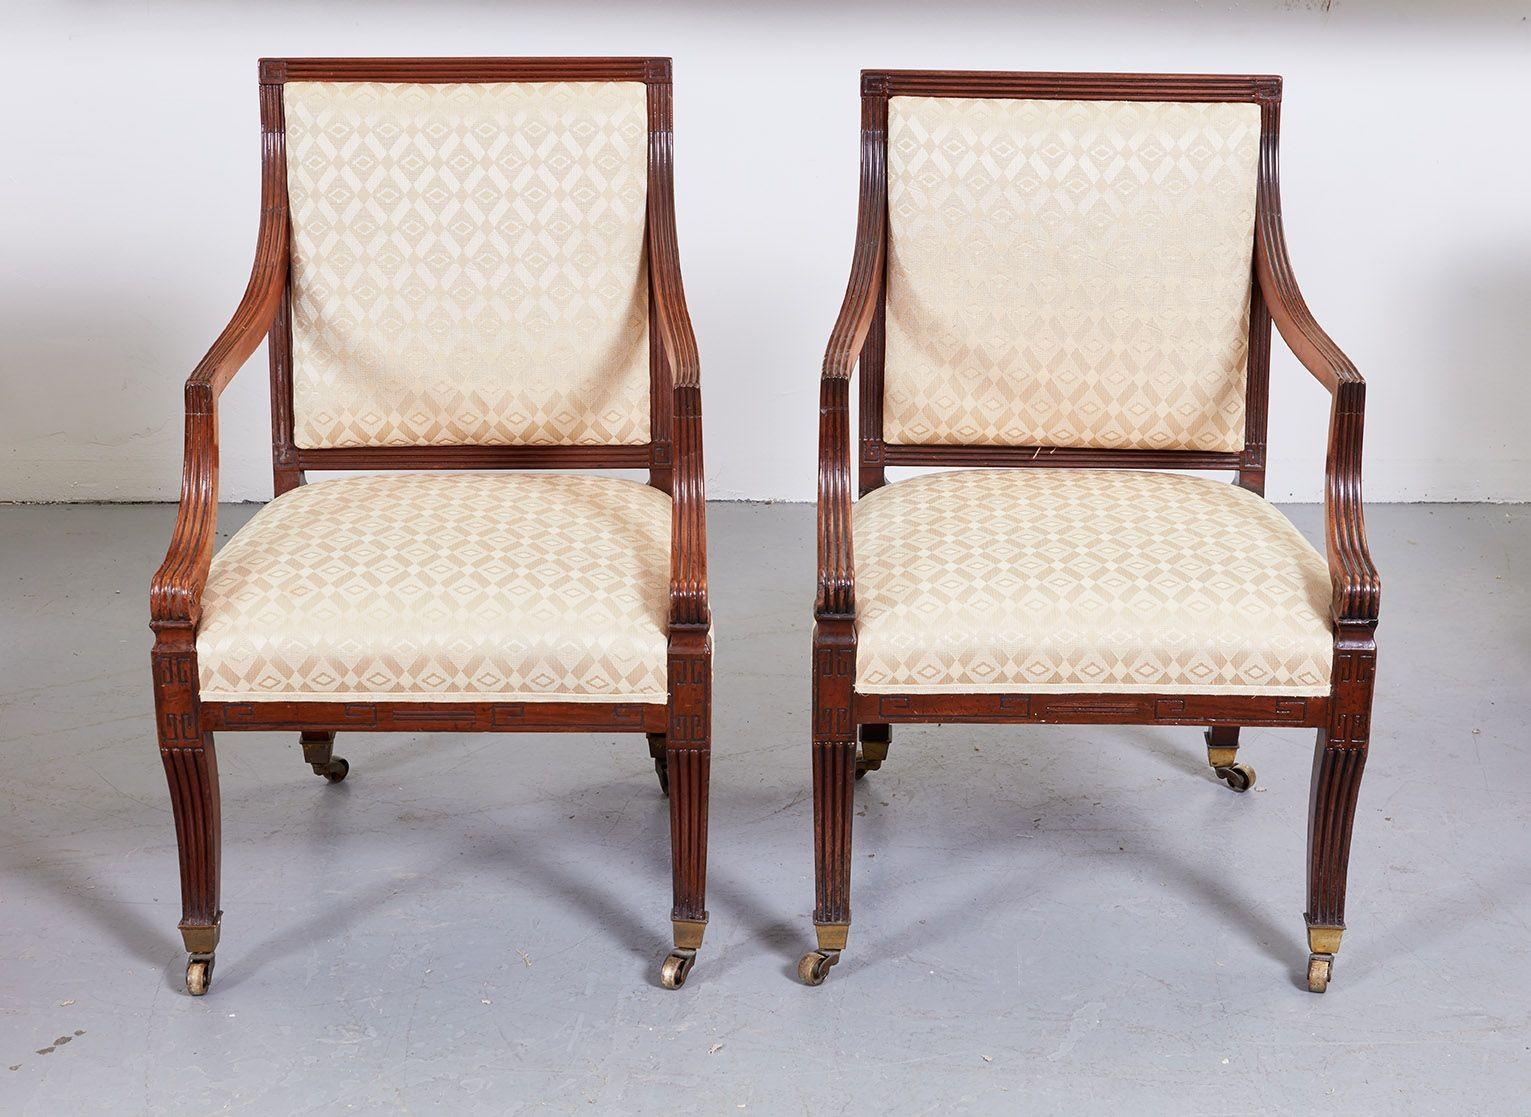 Feines Paar Sessel aus der Regency-Periode, quadratische Rückenlehnen mit geriffeltem Kamm, der in einem griechischen Schlüsselmotiv endet, Armlehnen, Rückenschienen, Sitzrahmen und Beine in ähnlicher Weise behandelt, letztere mit Säbelform, die in